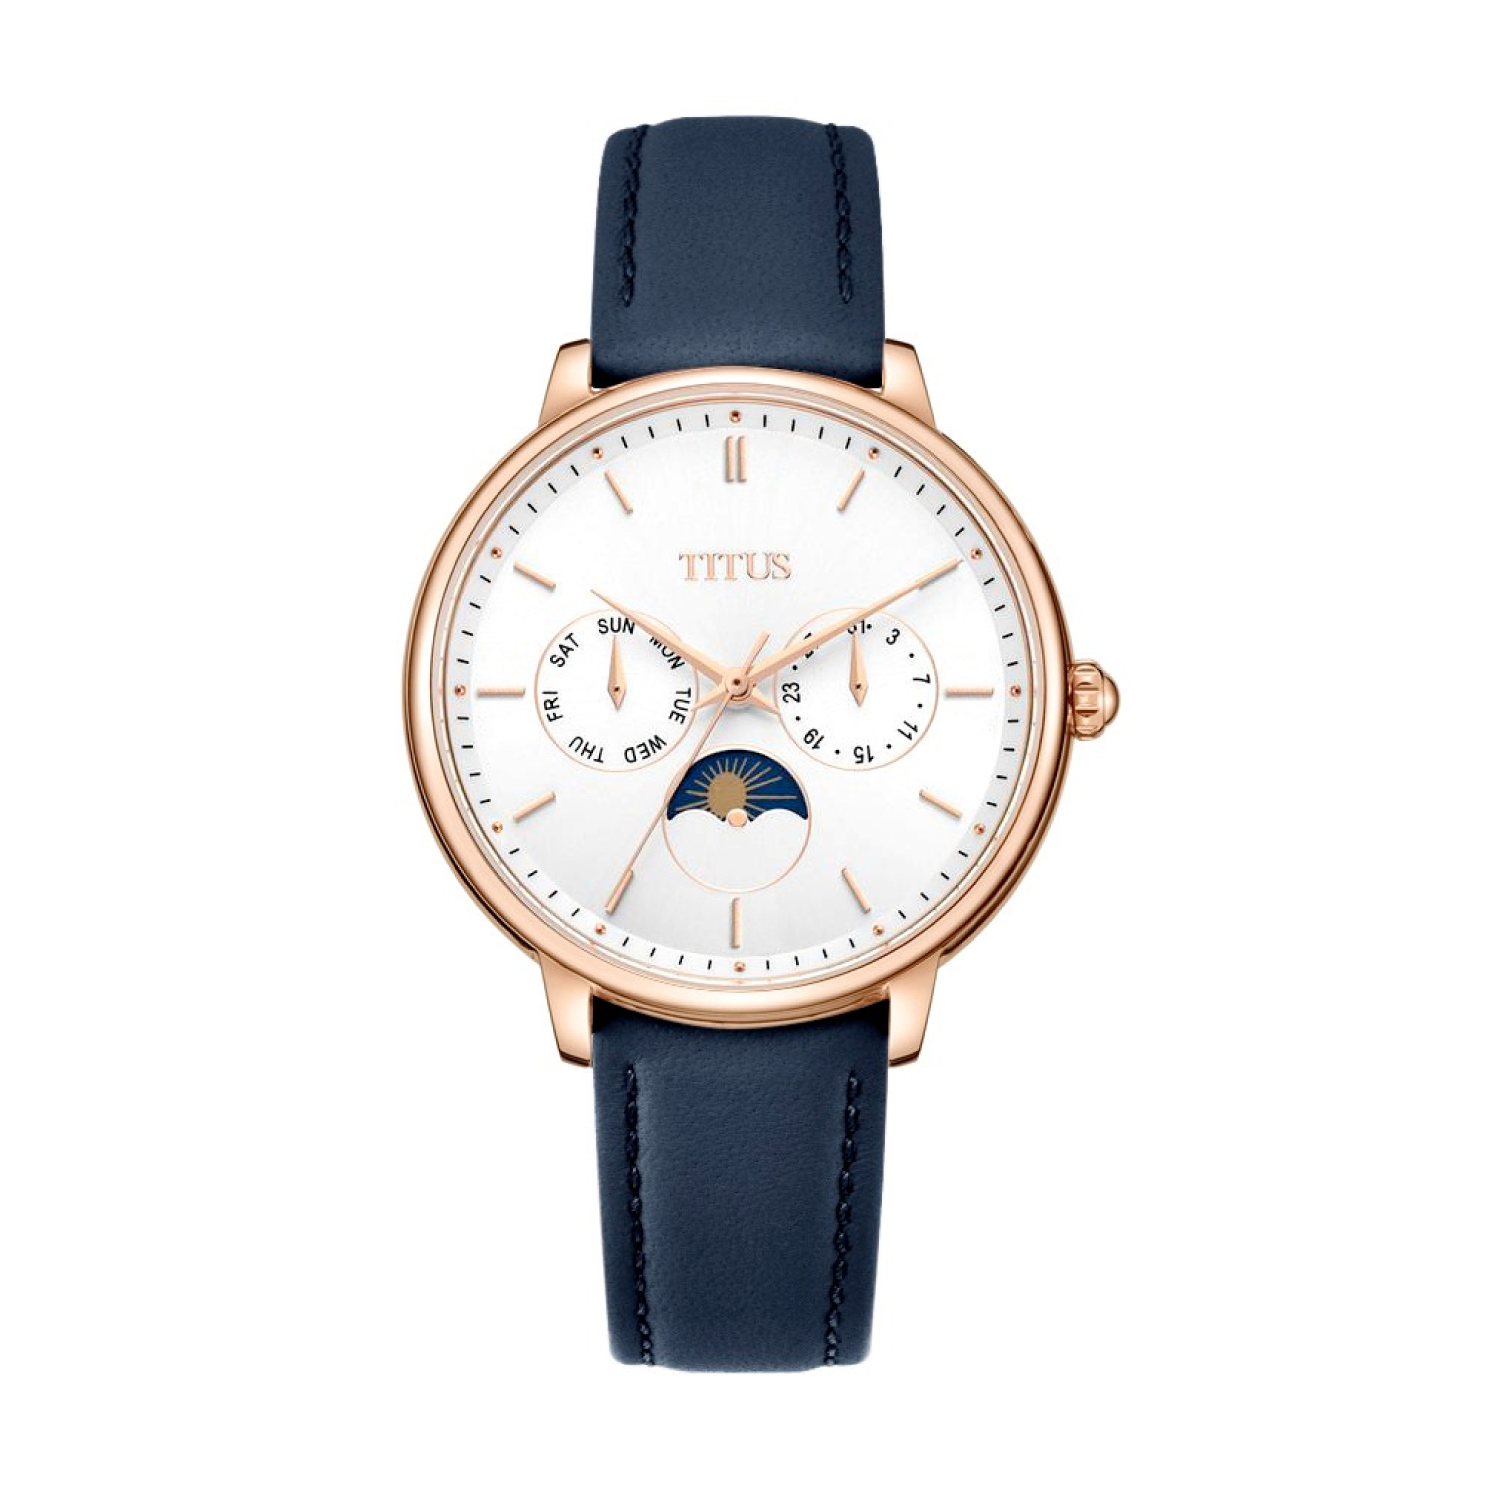 นาฬิกาผู้หญิง Fashionista มัลติฟังก์ชัน ระบบควอตซ์ สายหนัง ขนาดตัวเรือน 37 มม. (W06-03071-013)